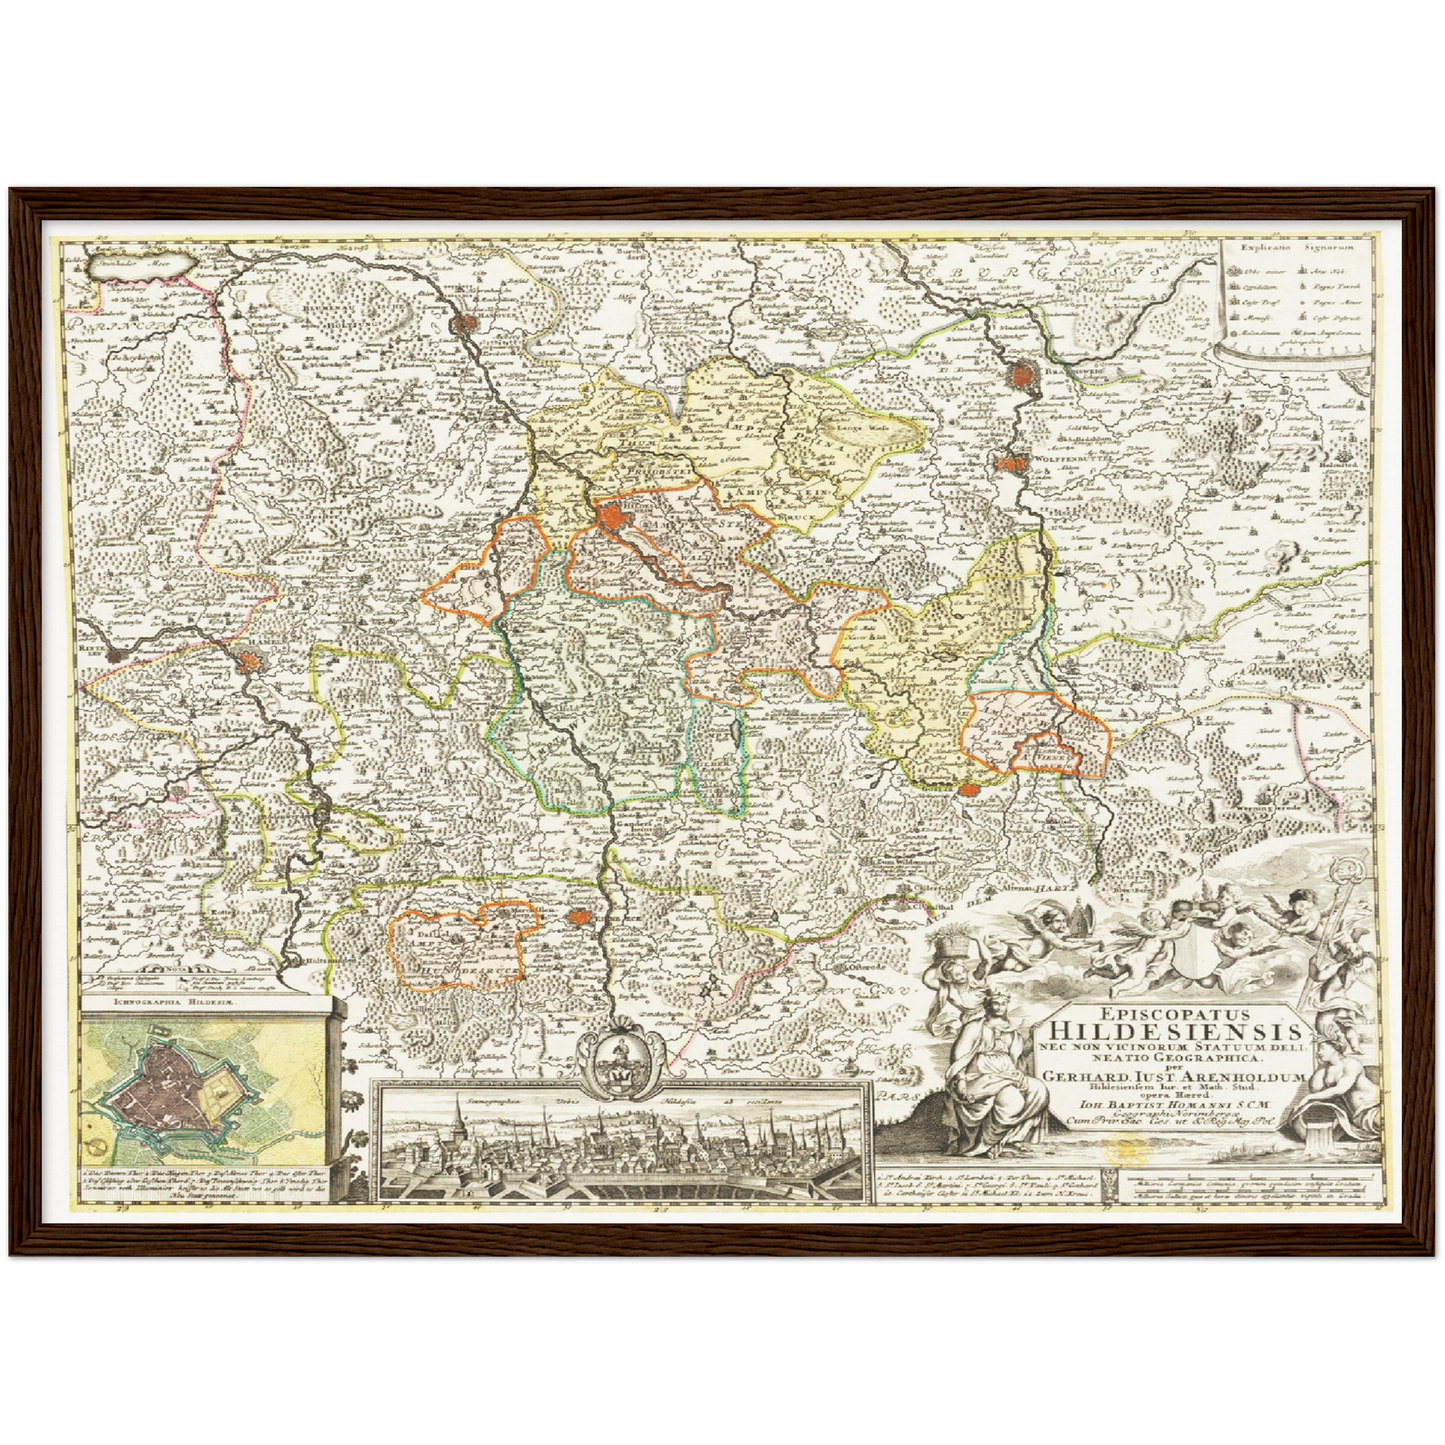 Historische Landkarte Hildesheim um 1730